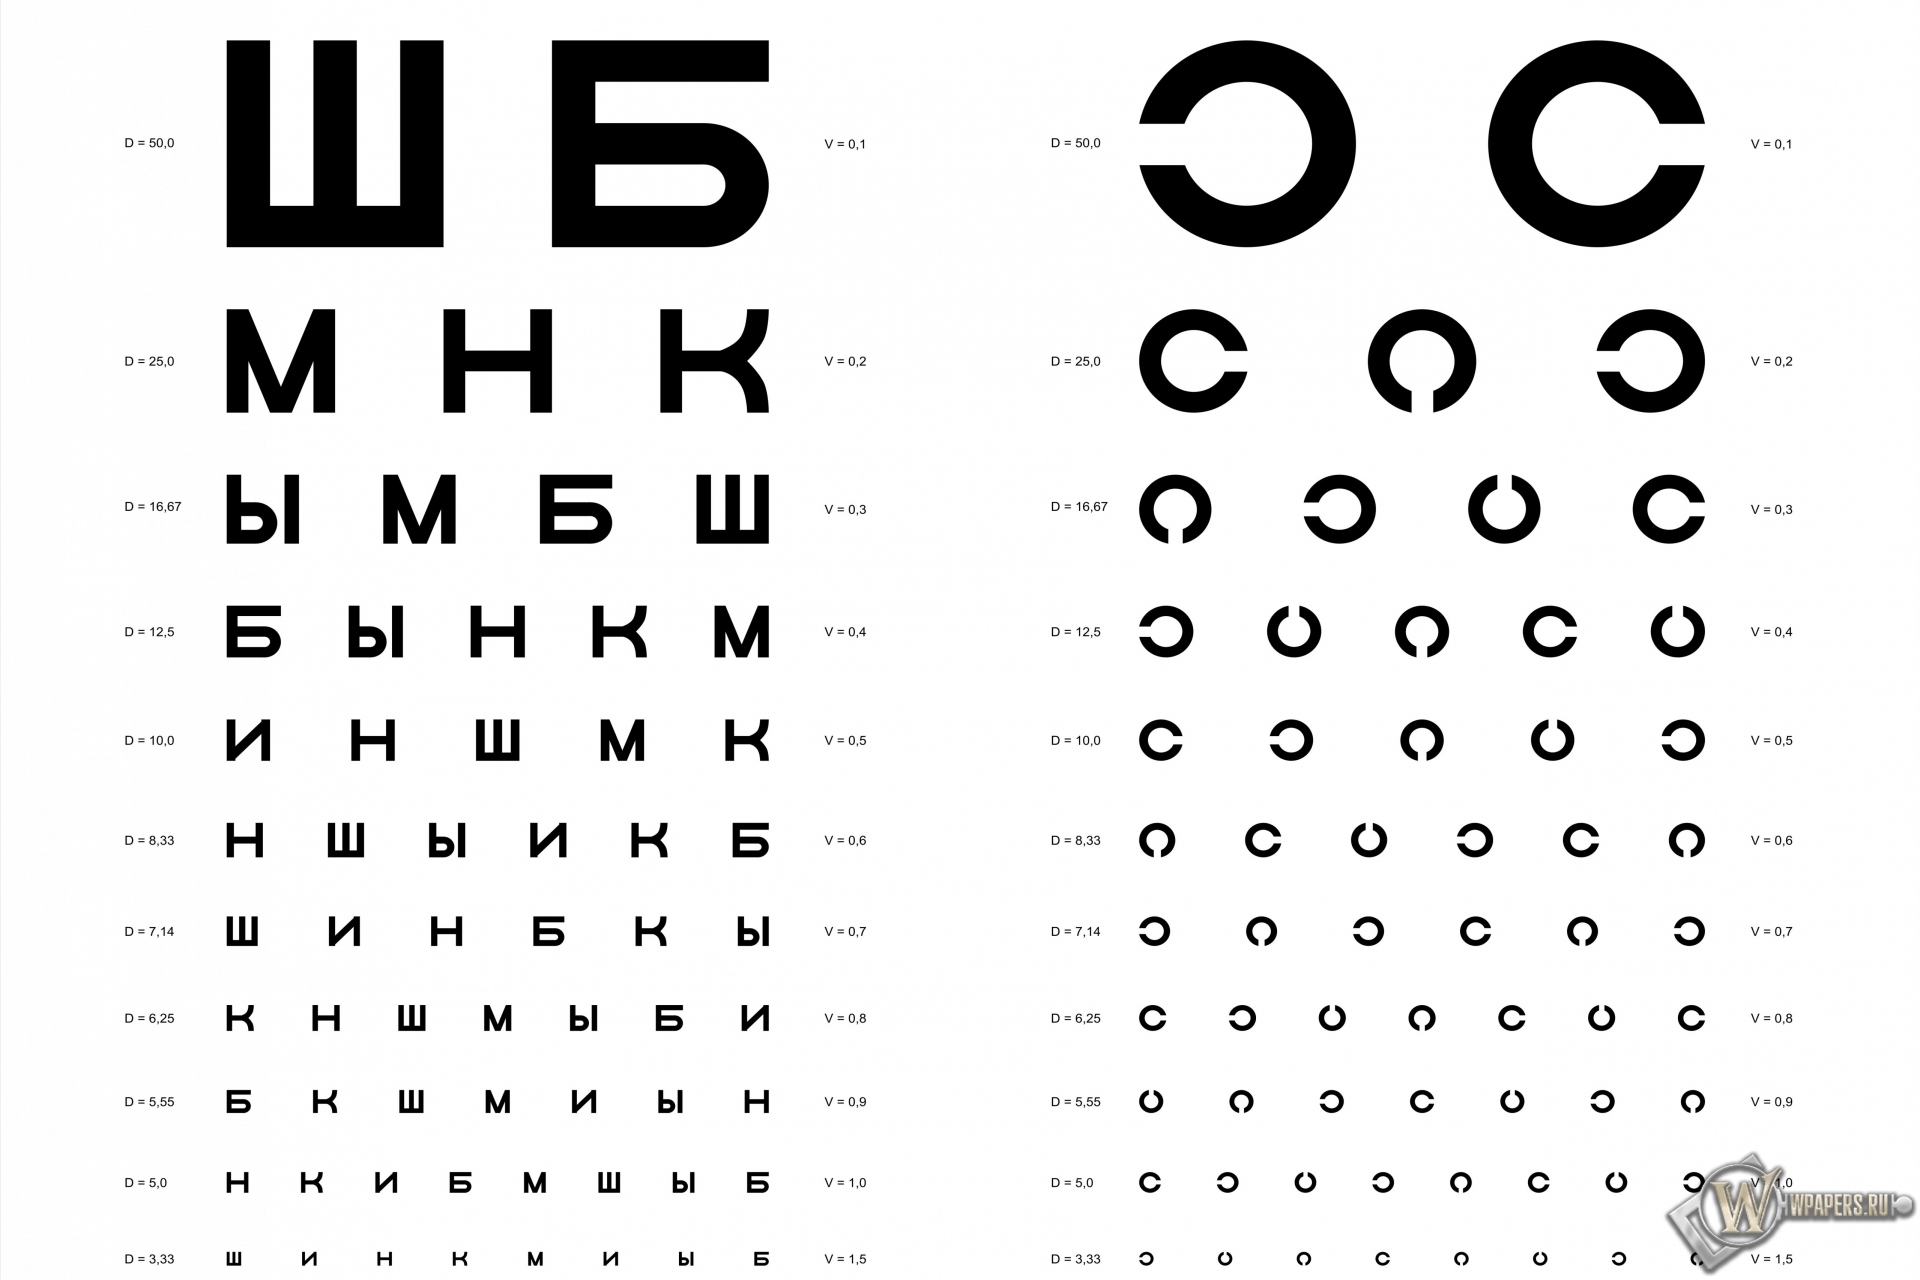 Таблица Д.А. Сивцева для проверки зрения 1920x1280